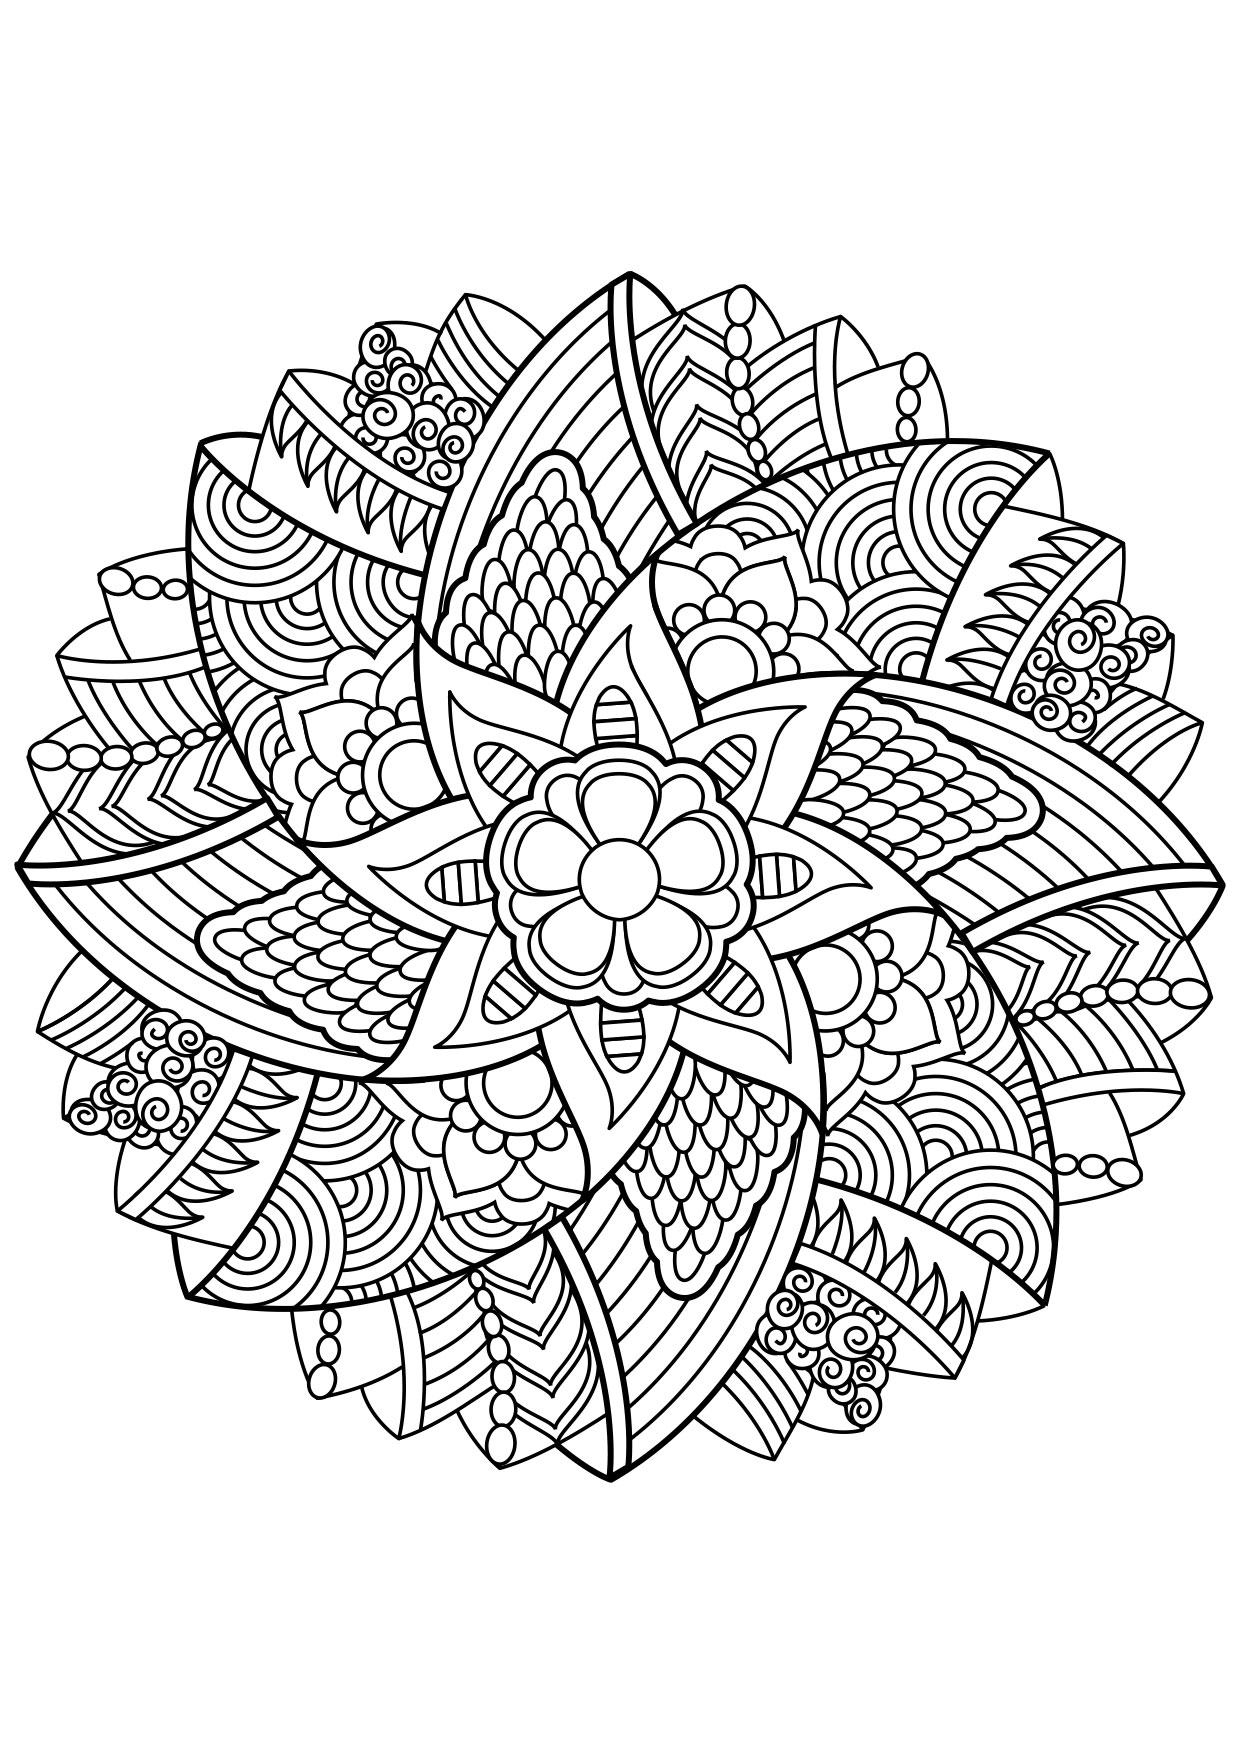 Desenho Para Colorir Mandala - Imagens Grátis Para Imprimir - img 30874